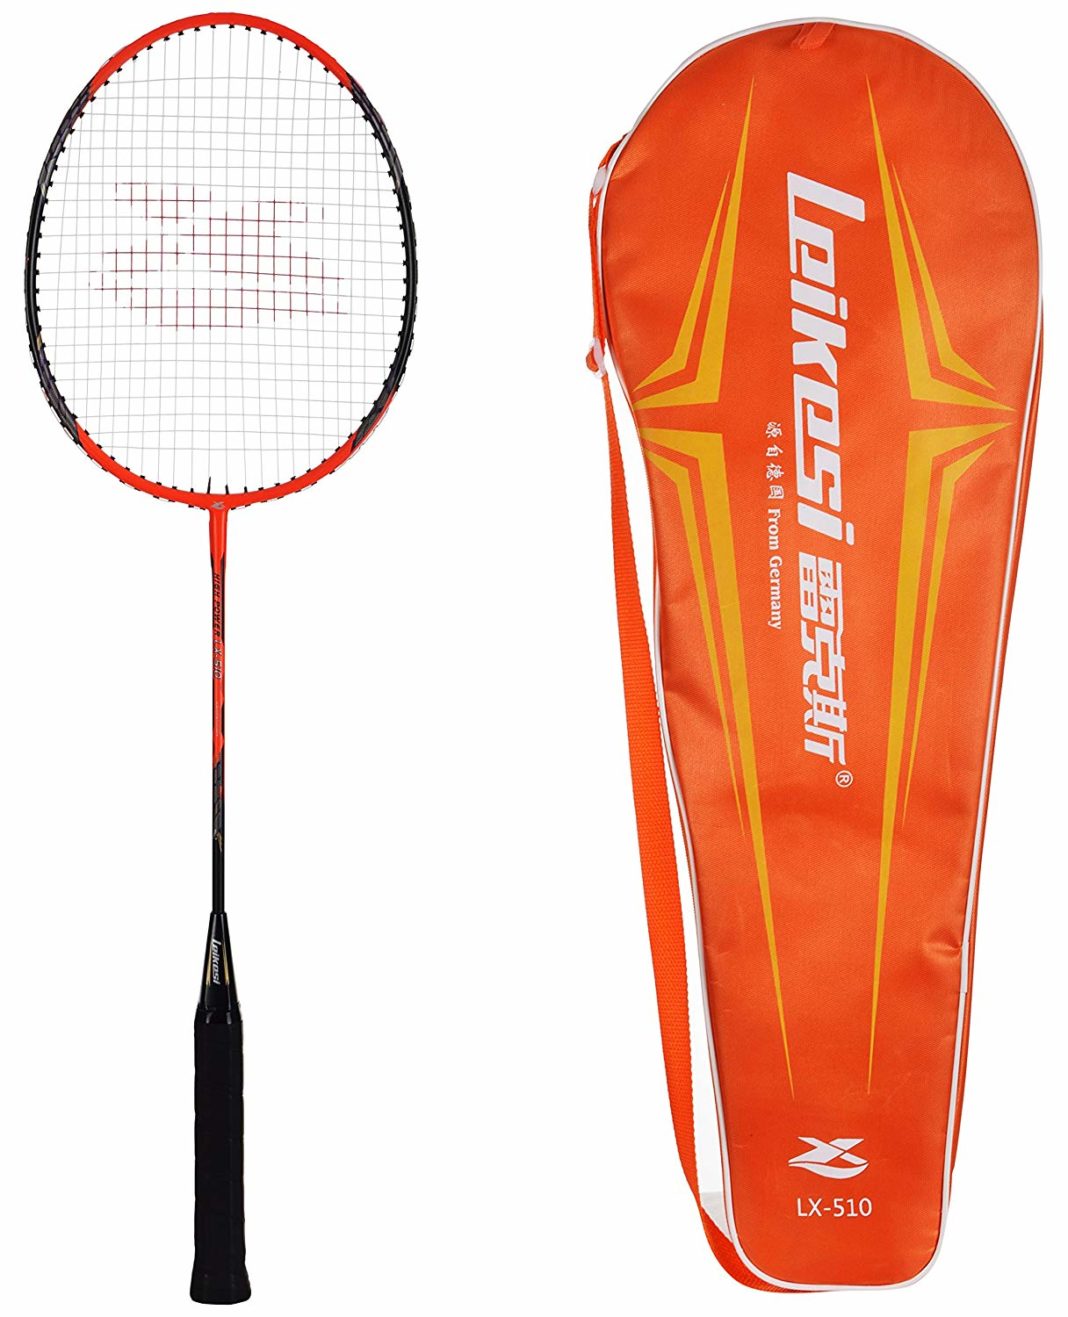 IRIS Carbon Steel Badminton Racquet 1 1068x1317 